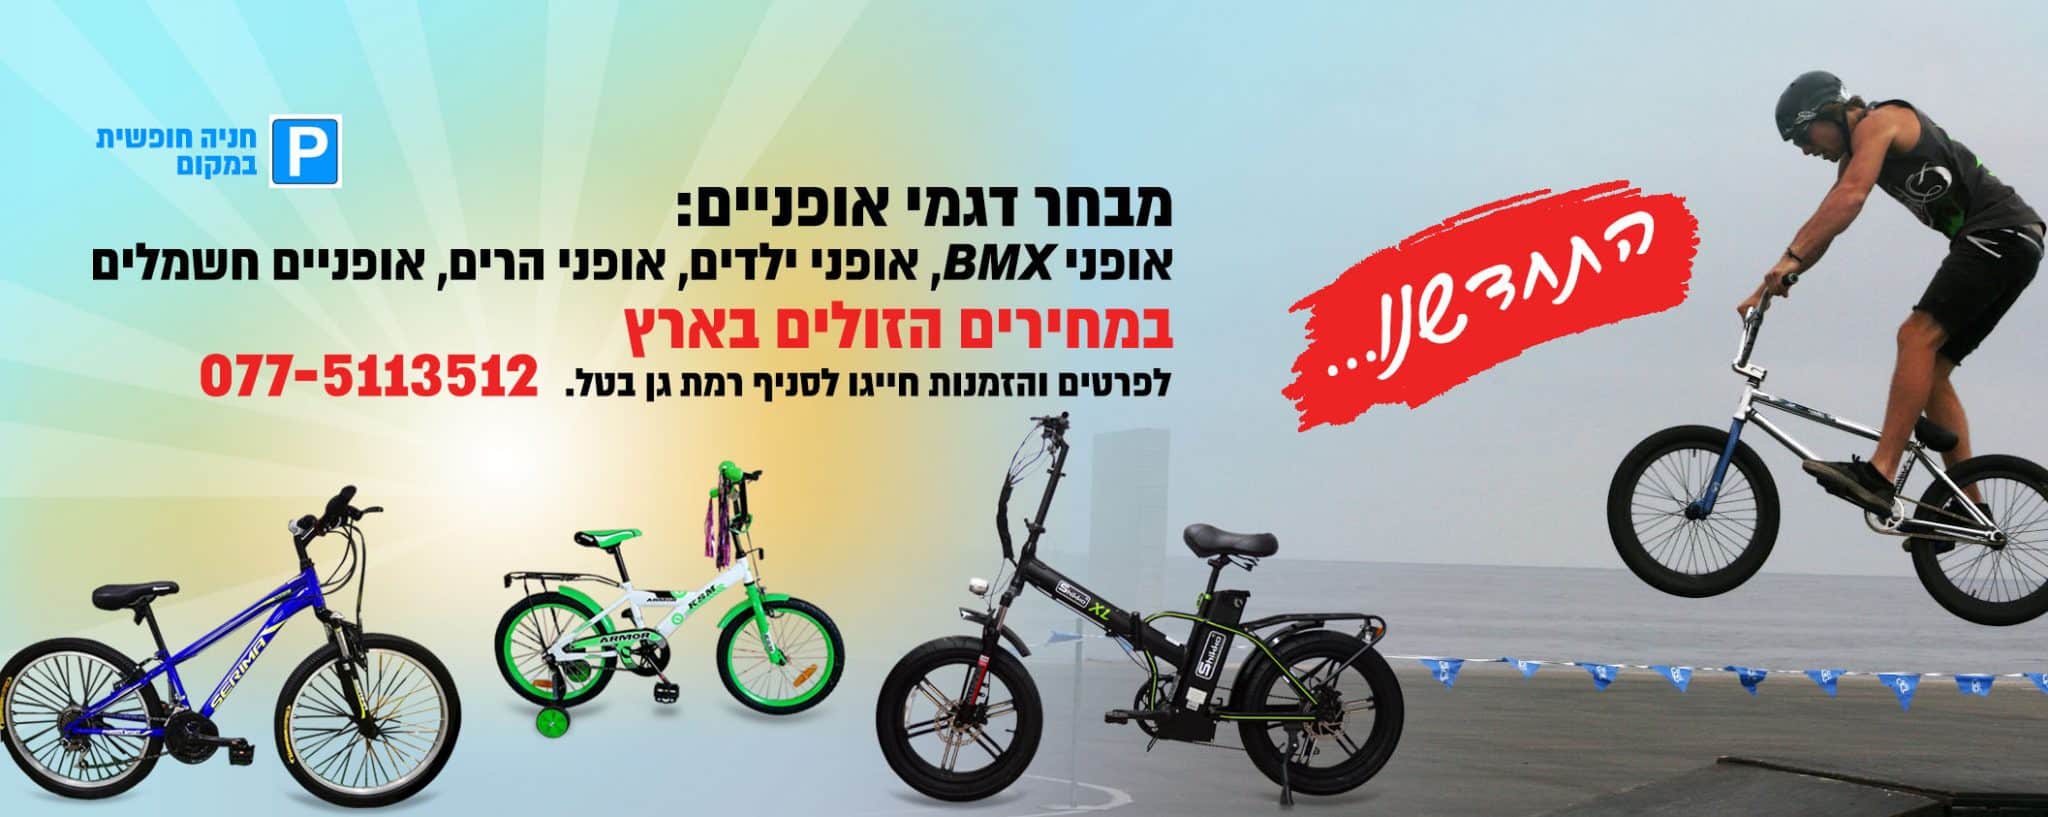 חנות אופניים ברמת גן - Shikko - חנות אופניים רמת גן